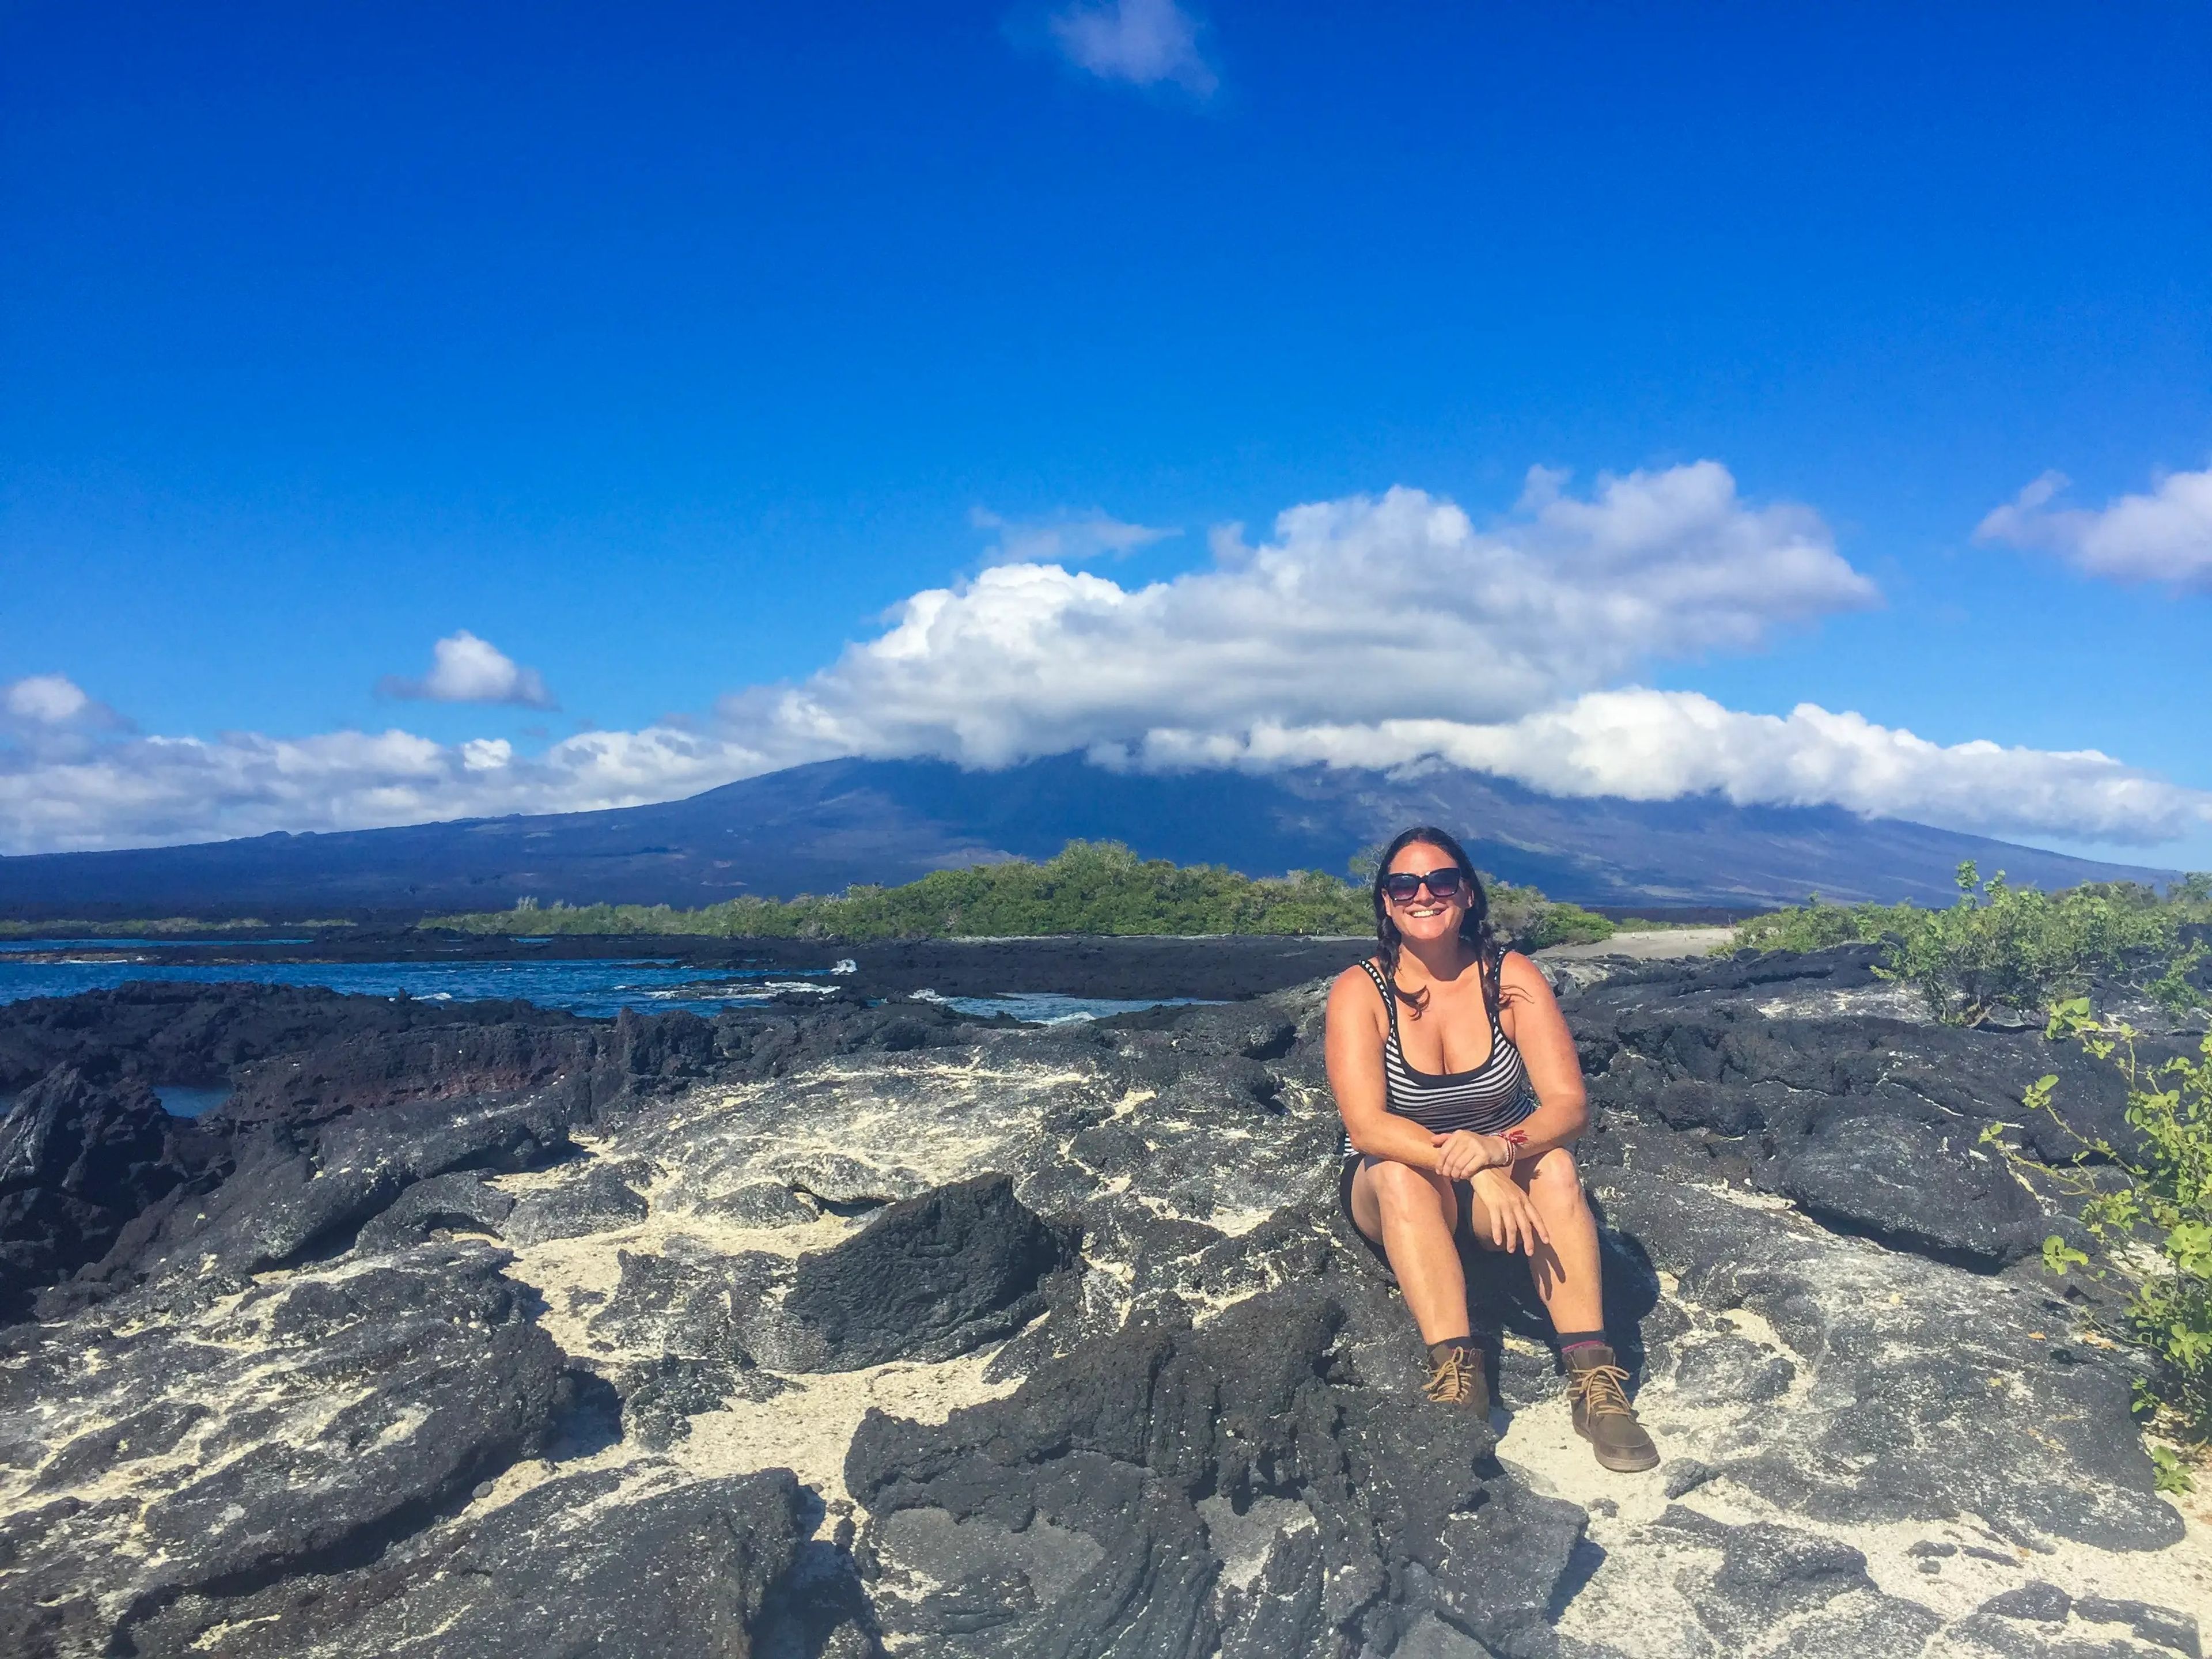 Author Abbie Synan visiting the Galapagos